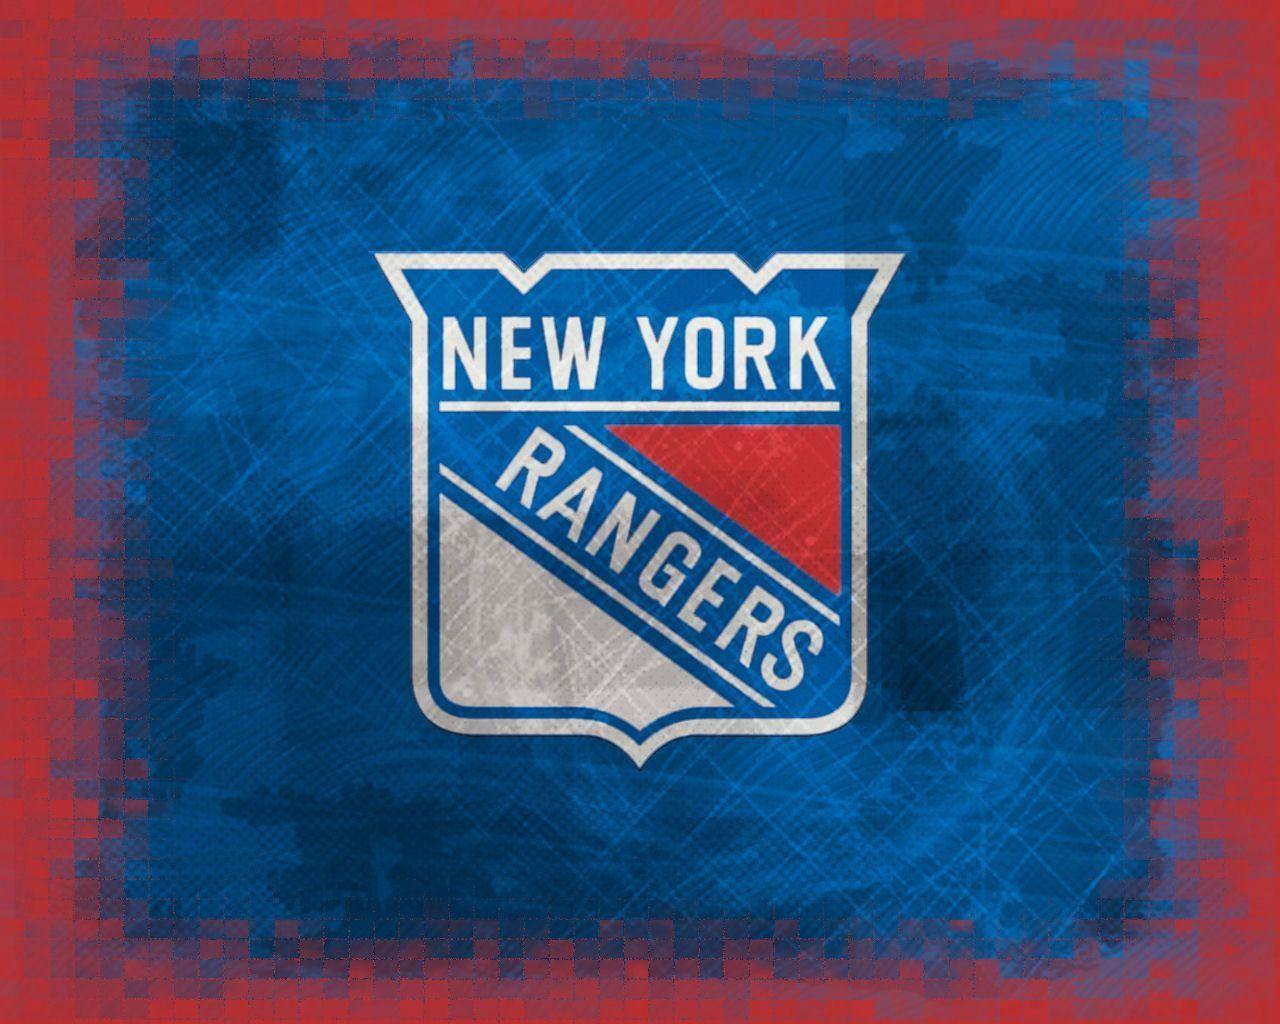 New York Rangers wallpaper. New York Rangers background